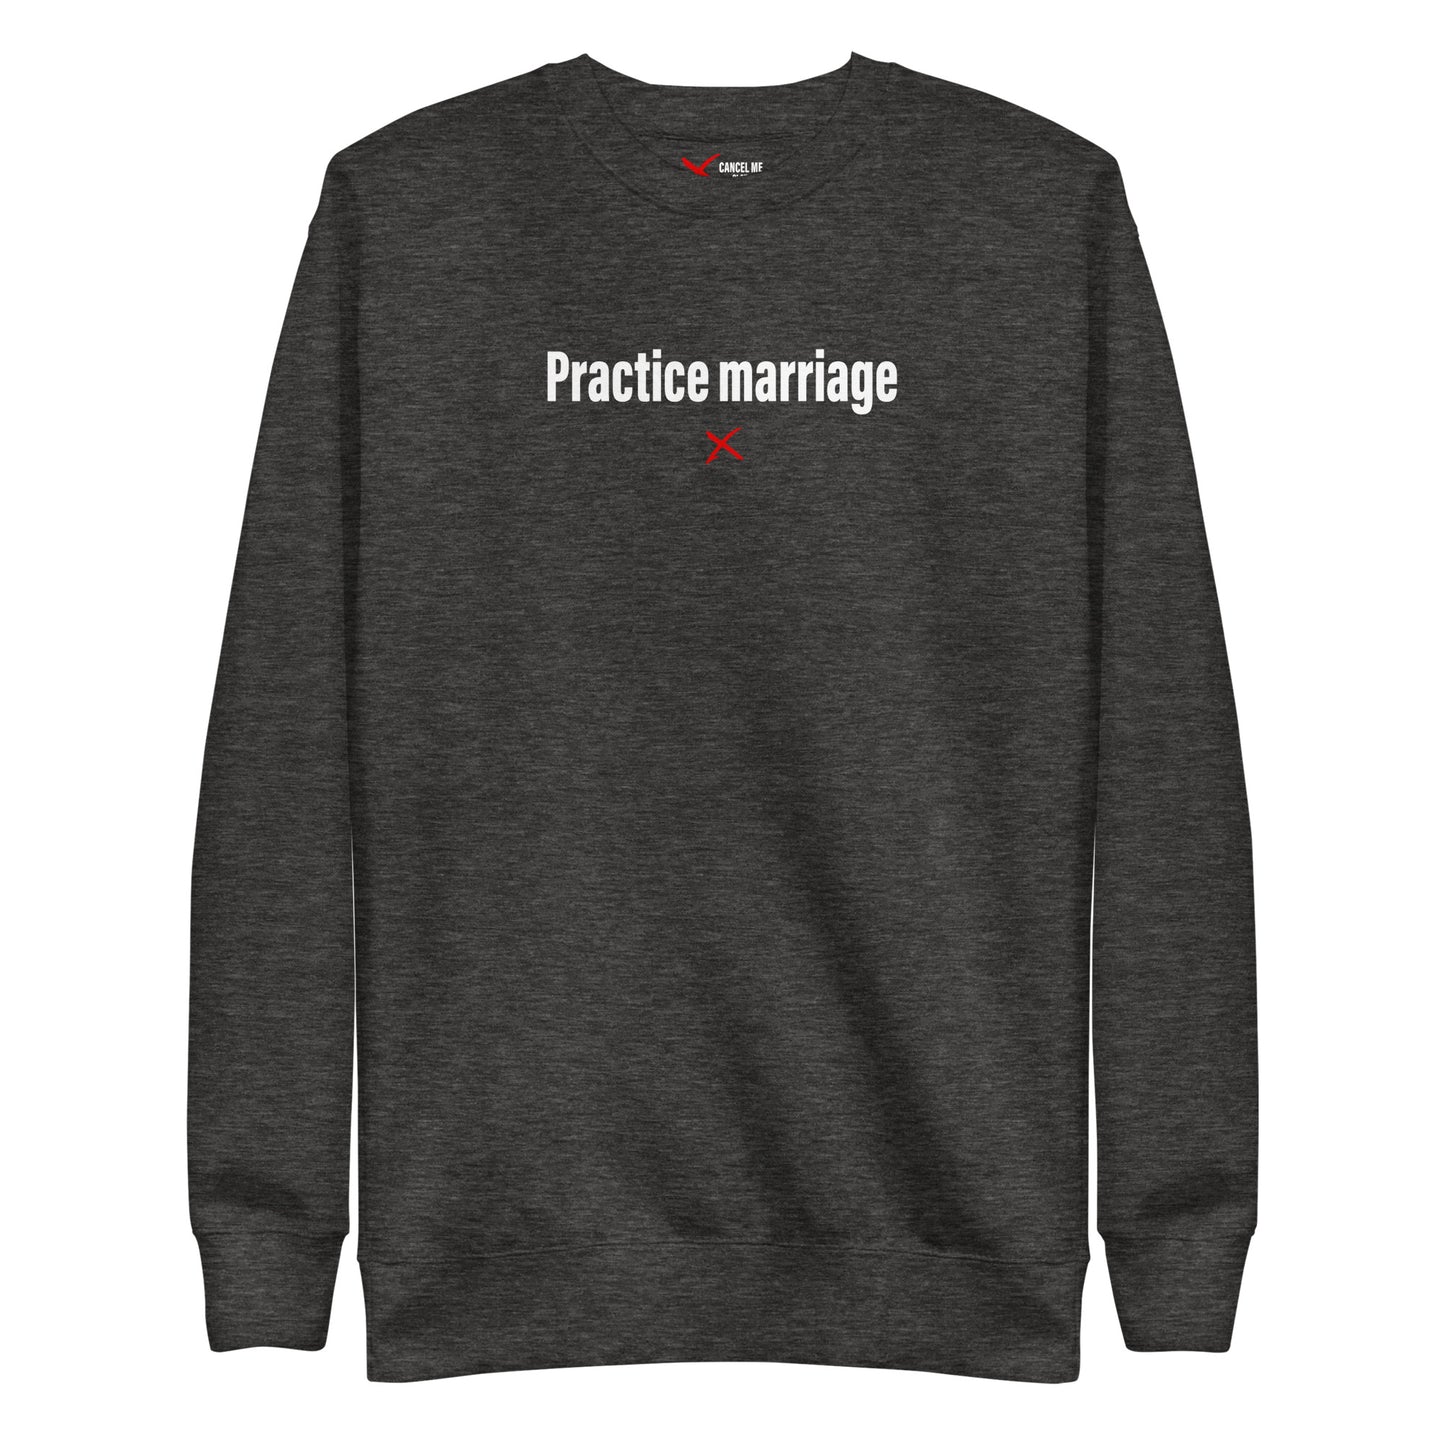 Practice marriage - Sweatshirt